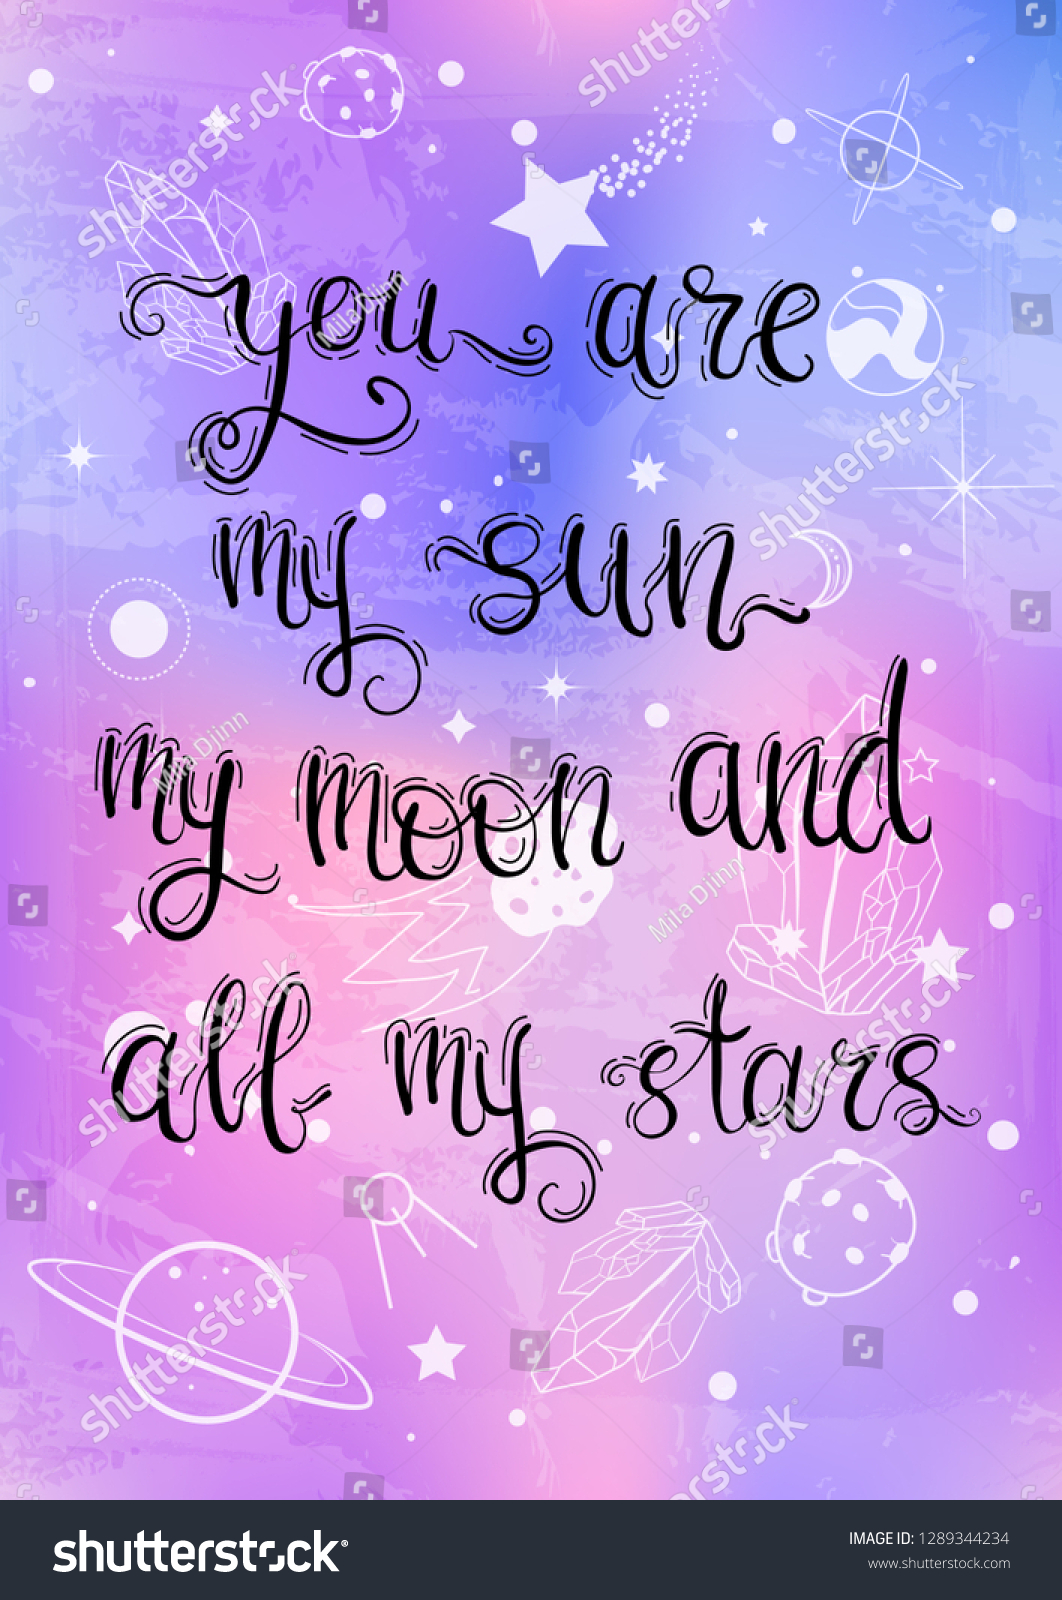 You are my starlight. You are my Star. You are my Sun картинки. You are my Sun my Moon and all my Stars. You my Sun my Moon my Stars.